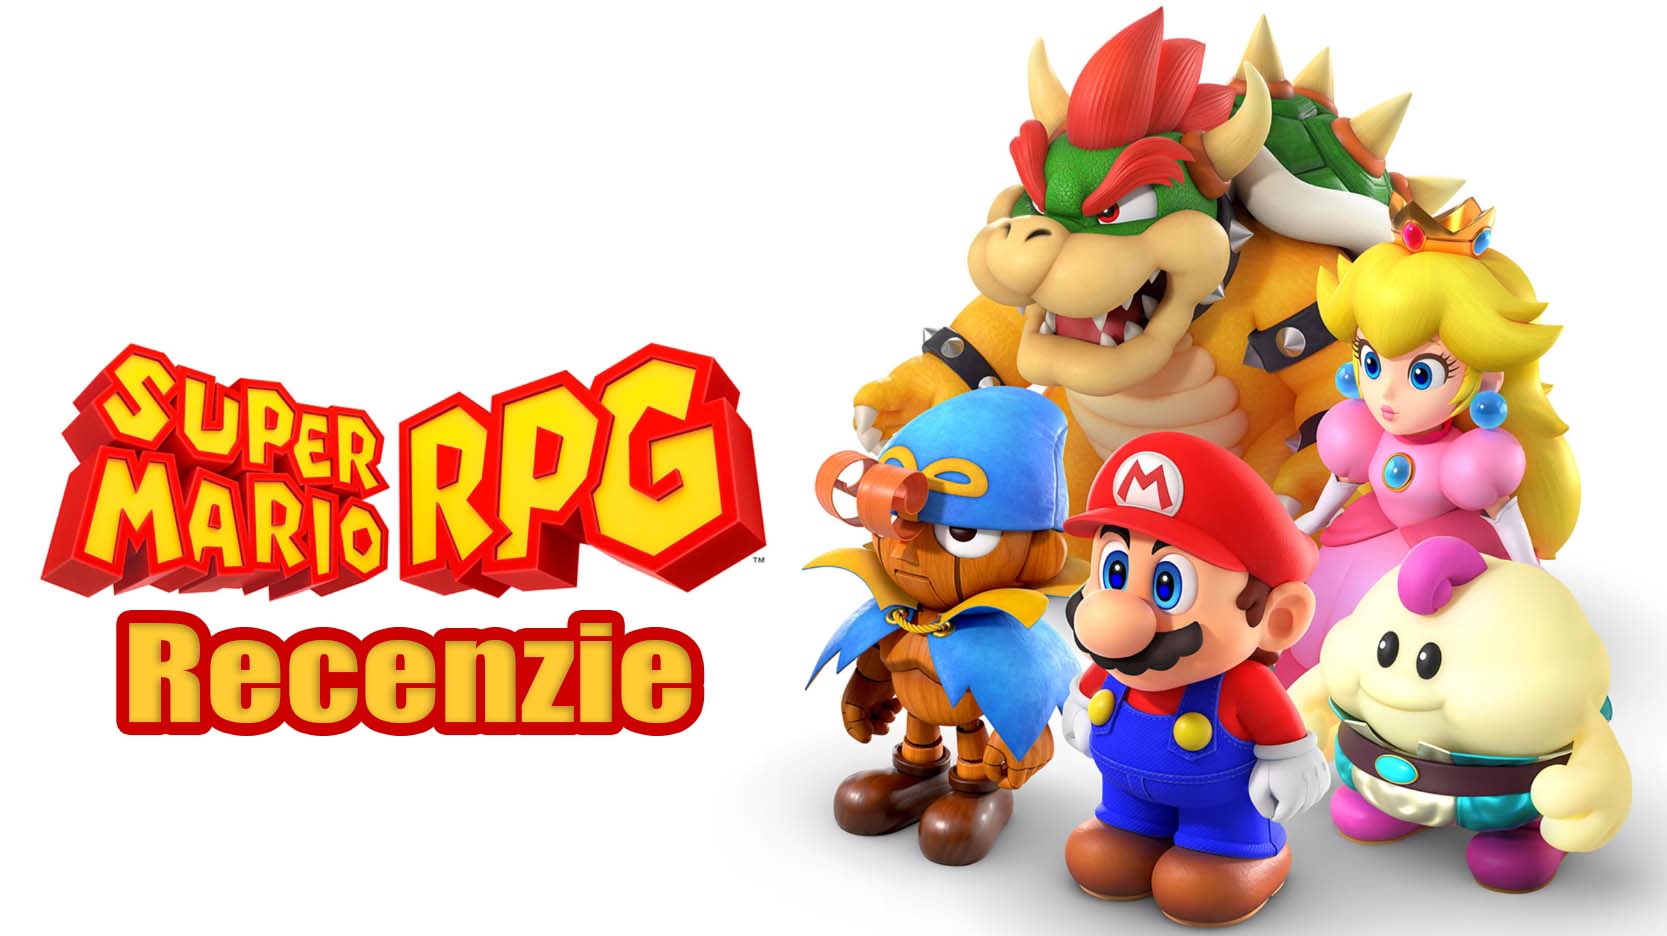 Super Mario RPG: Recenzie